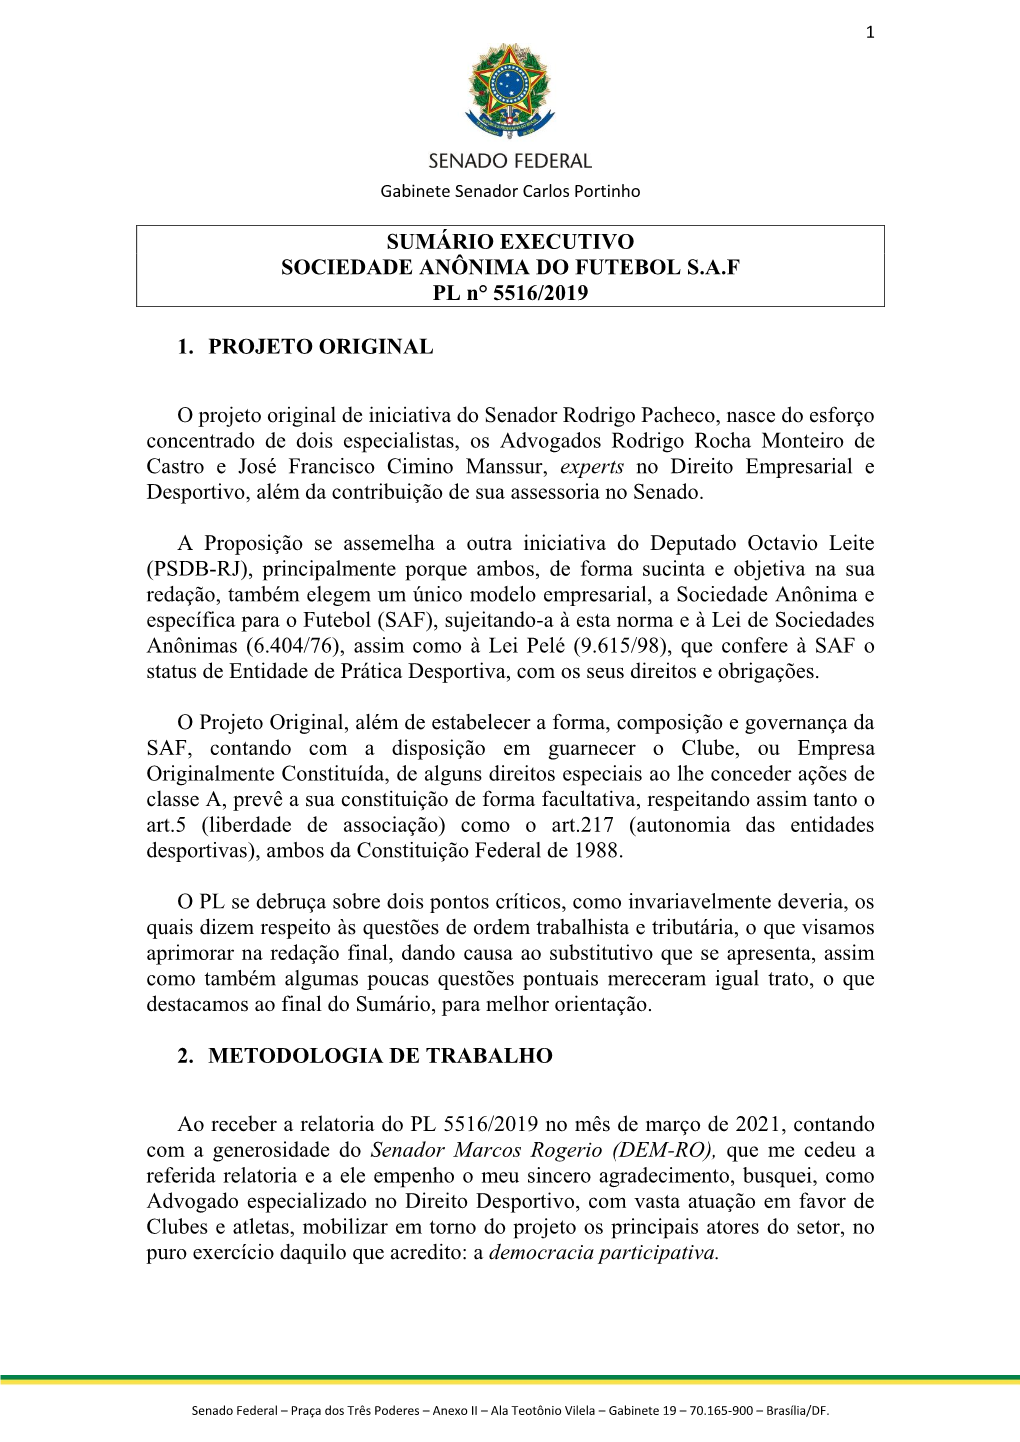 SUMÁRIO EXECUTIVO SOCIEDADE ANÔNIMA DO FUTEBOL S.A.F PL N° 5516/2019